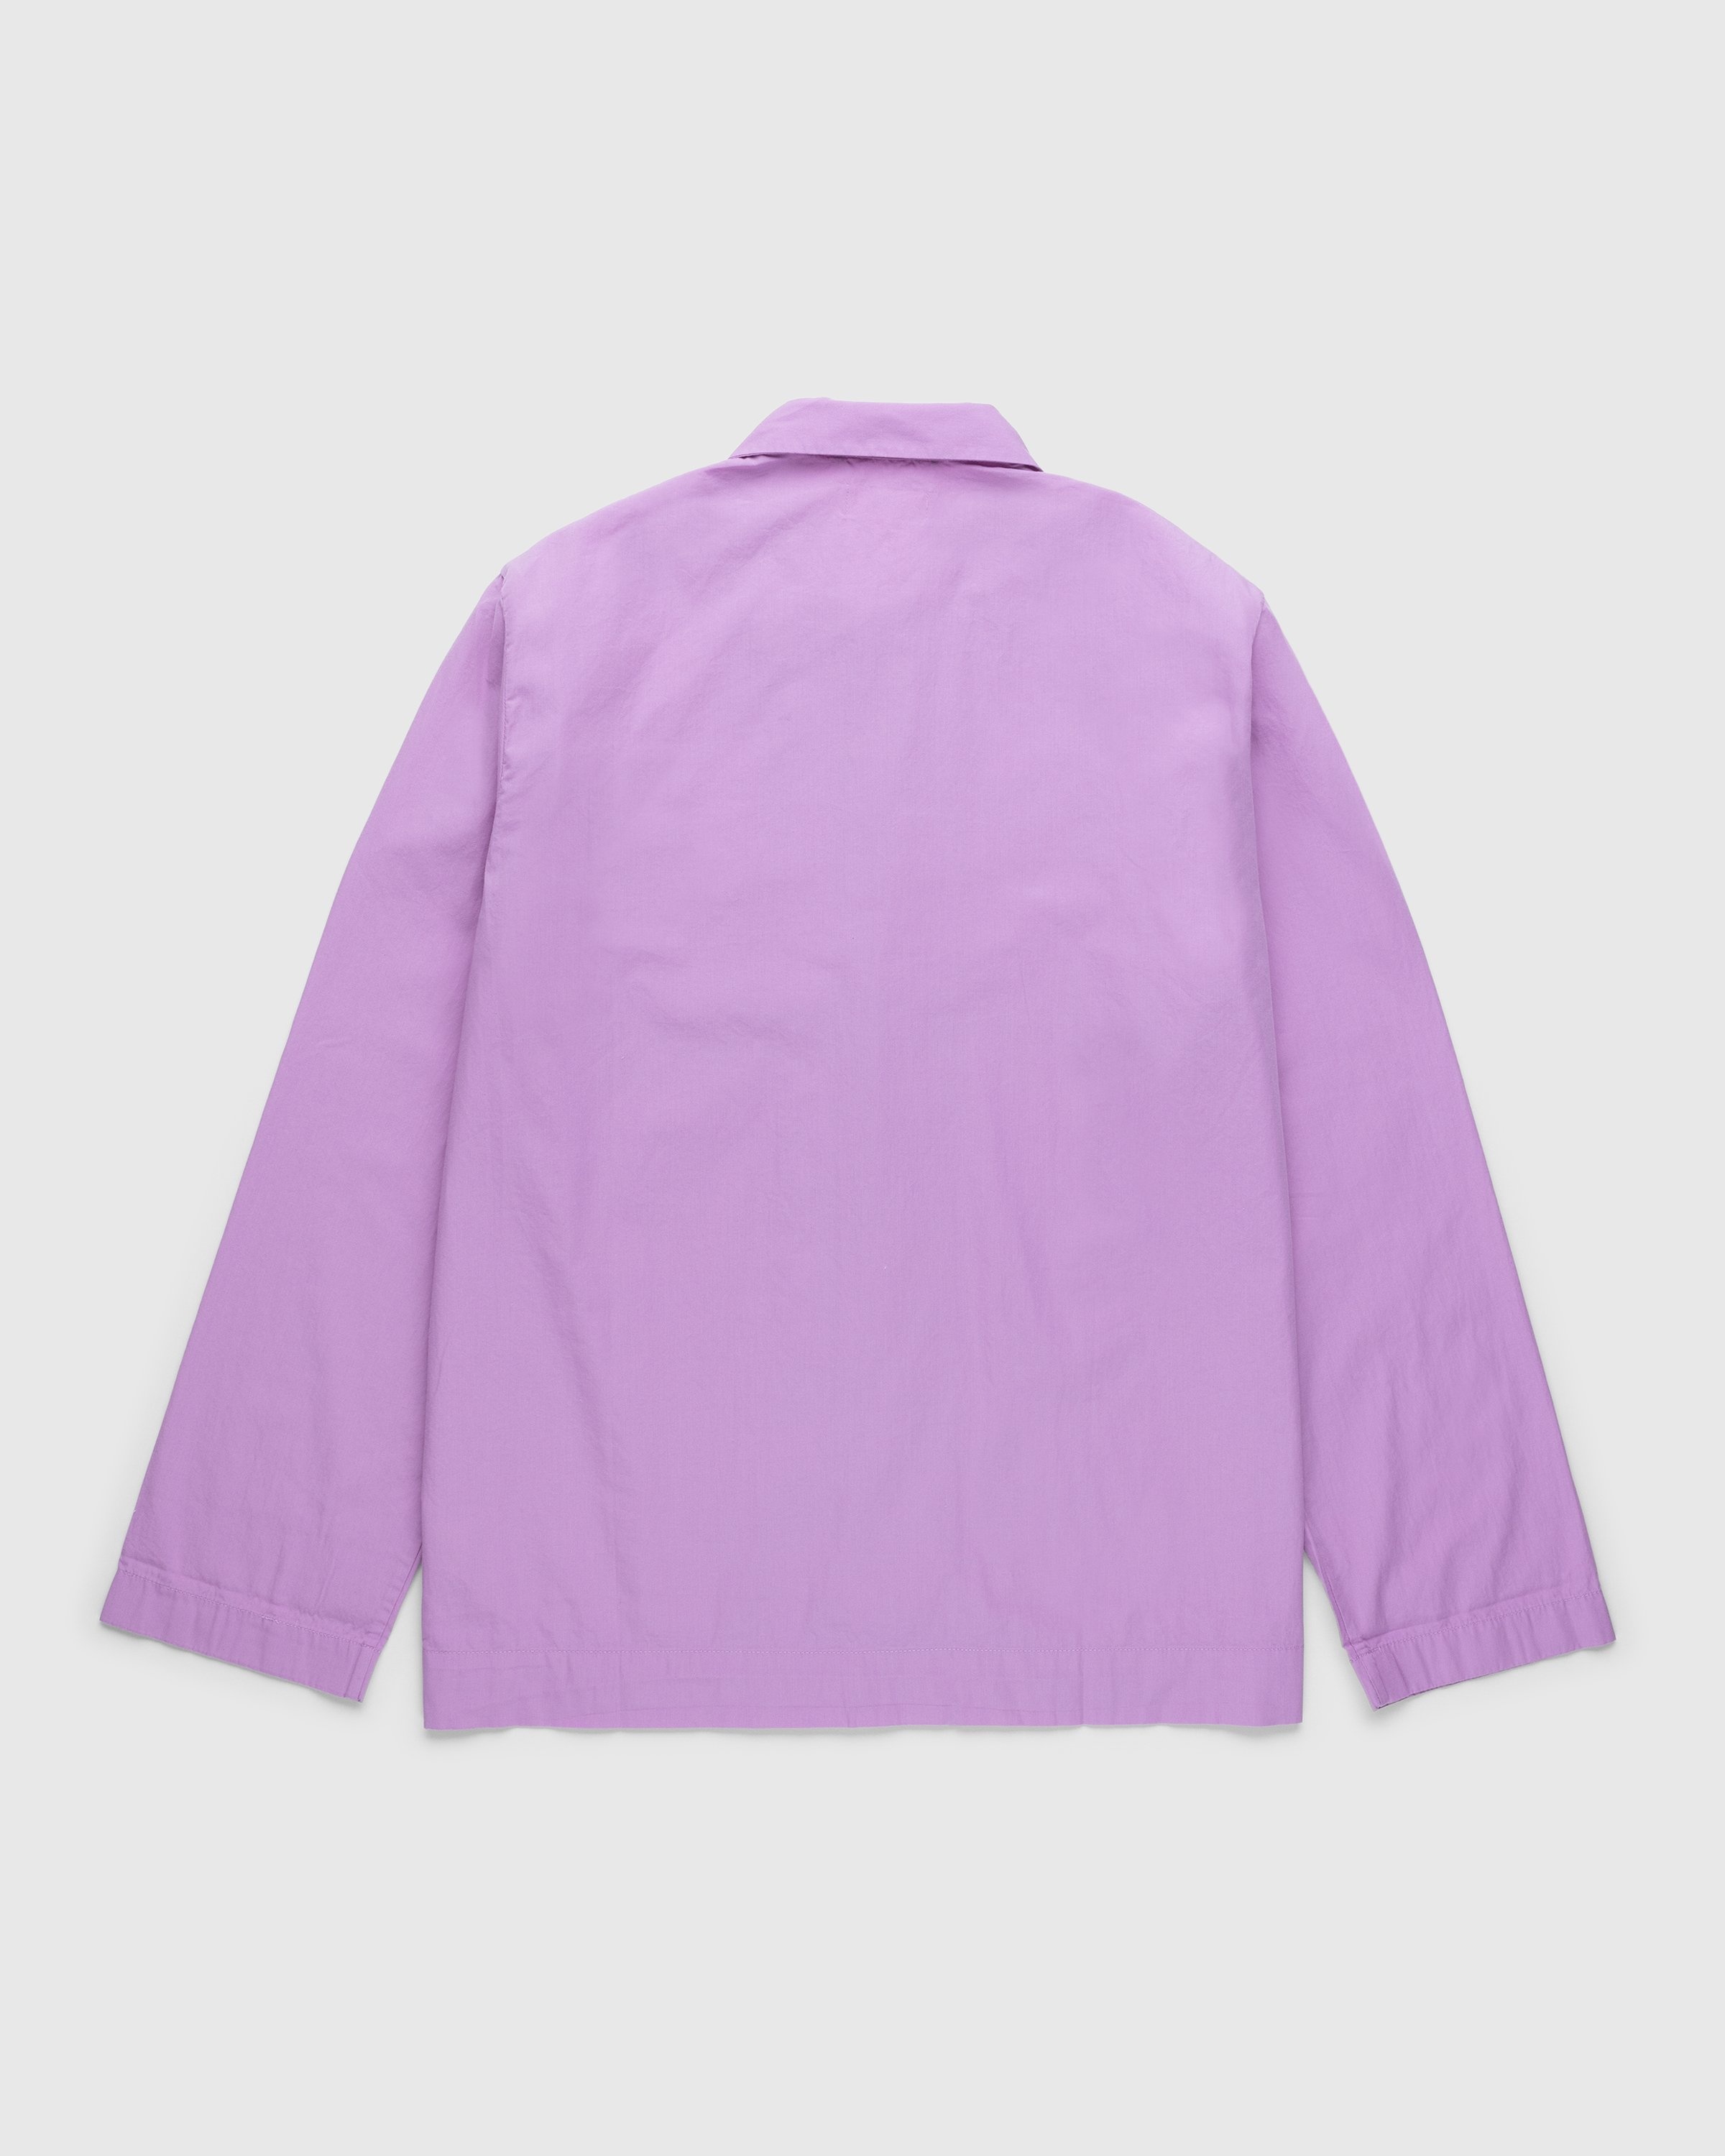 Tekla – Cotton Poplin Pyjamas Shirt Purple Pink - Pyjamas - Pink - Image 2